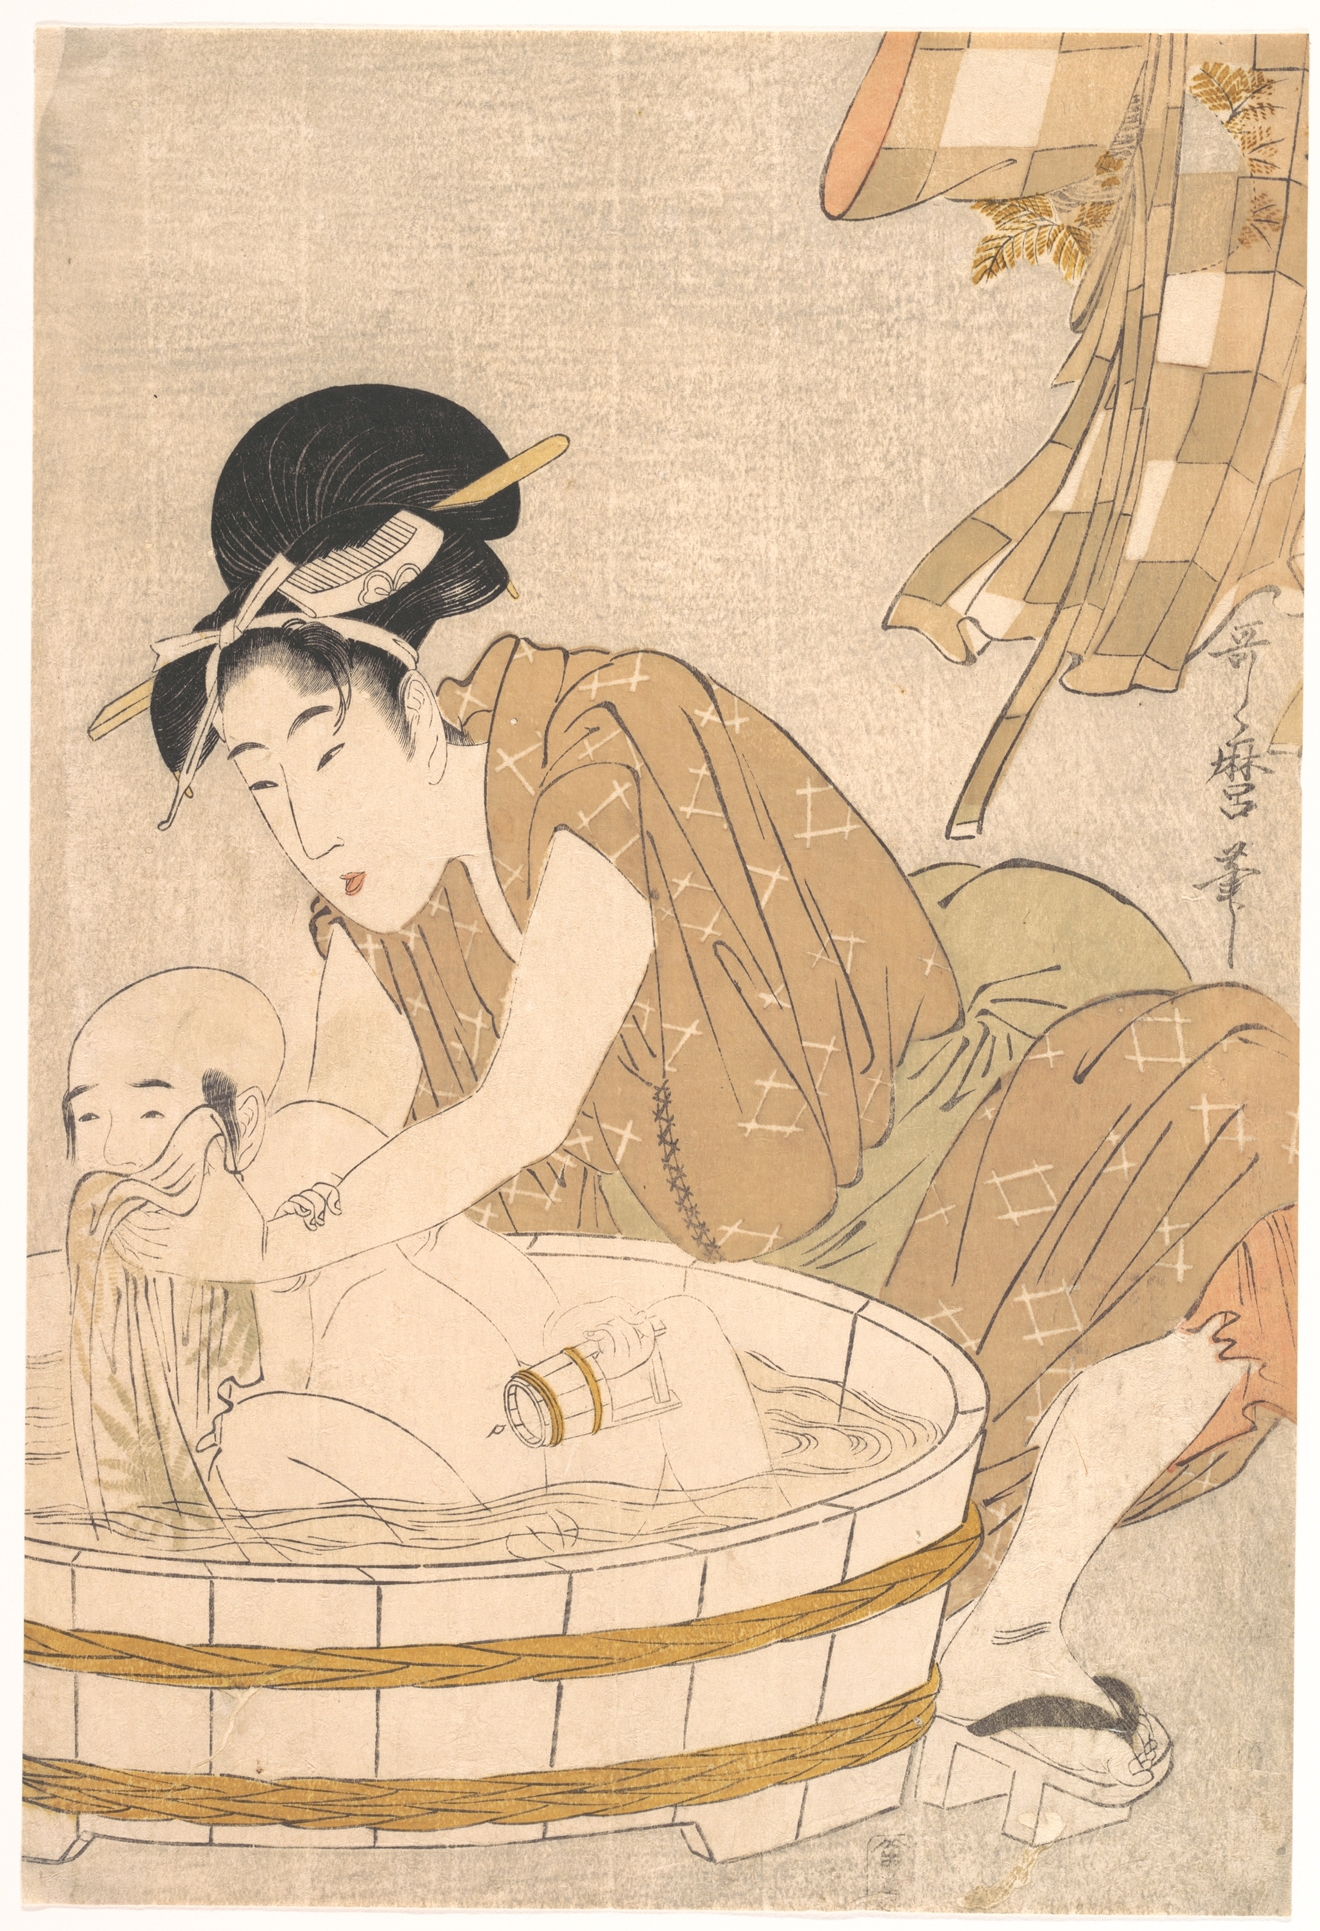 行水 by Kitagawa Utamaro - 1801年頃 - 37.3 x 25.1 cm 